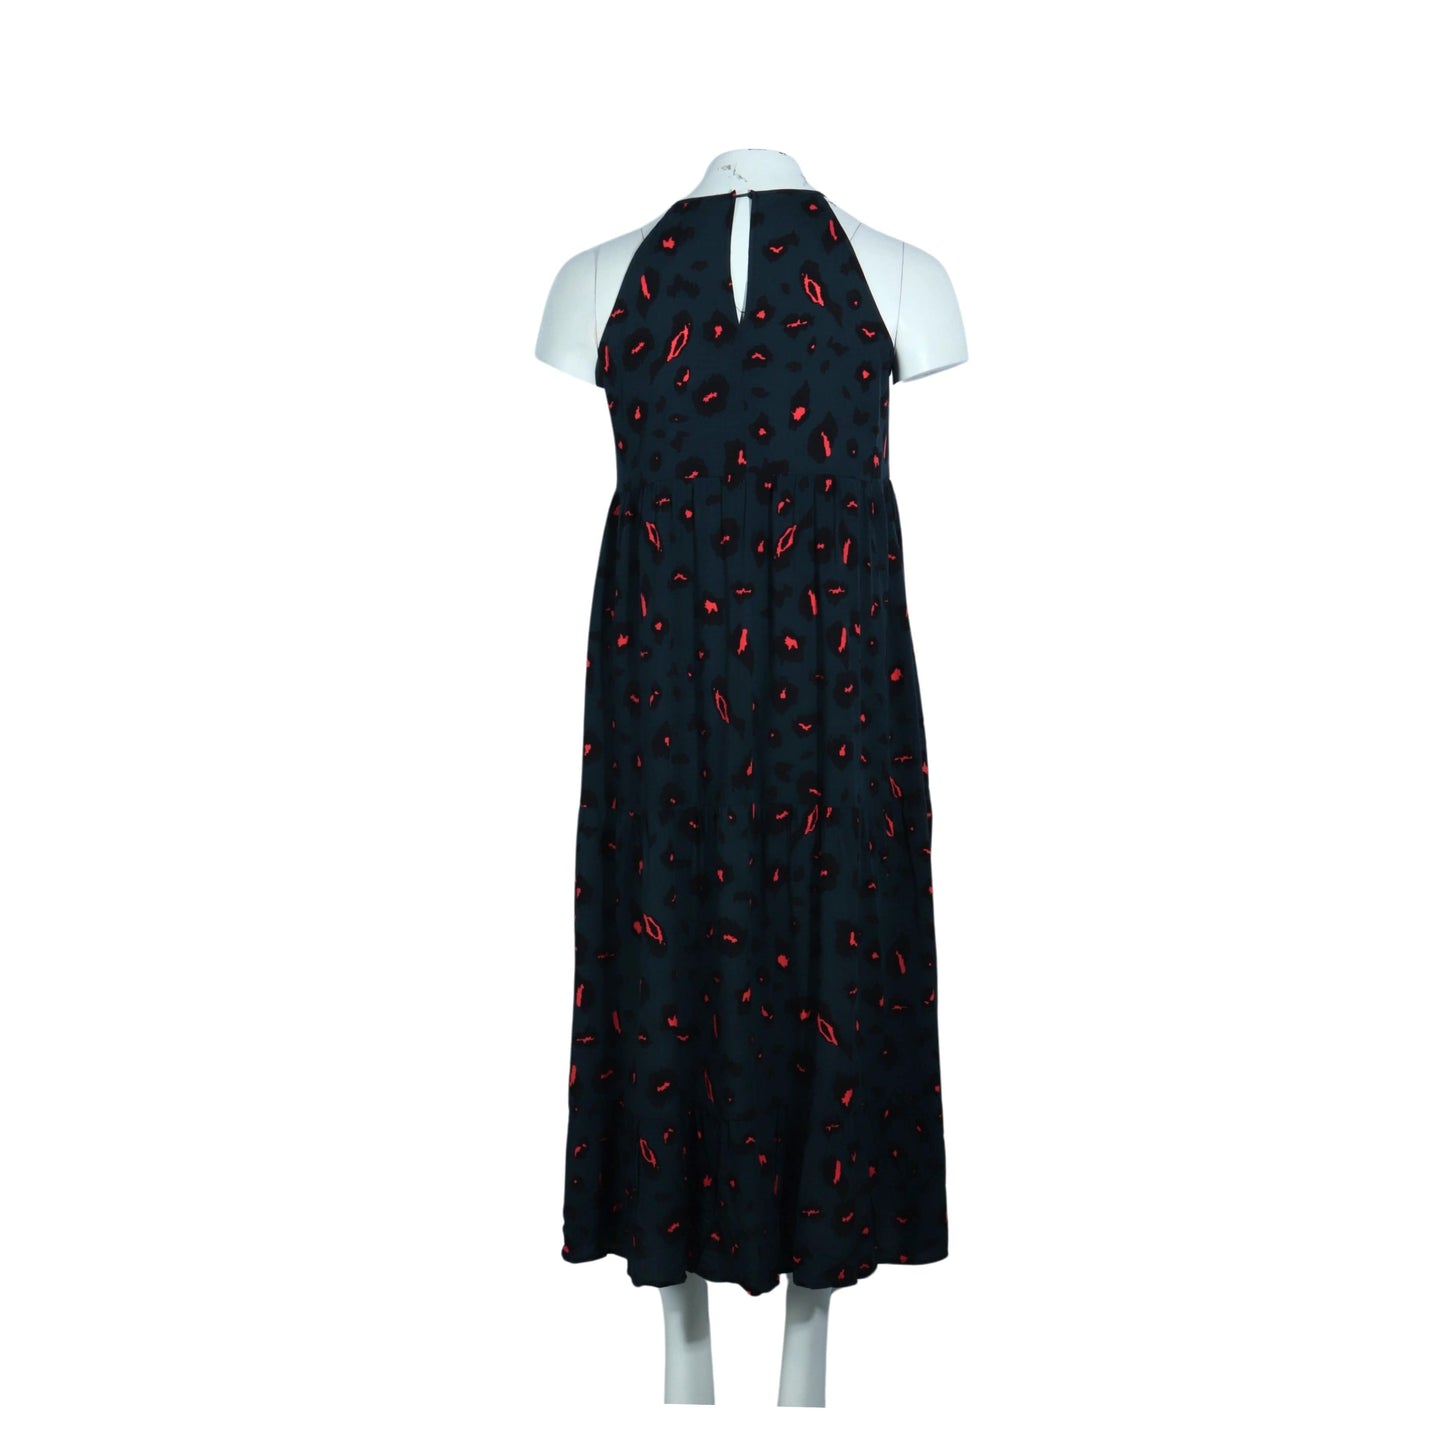 FARORO Womens Dress L / Multi-Color FARORO - Halter Neck Dress